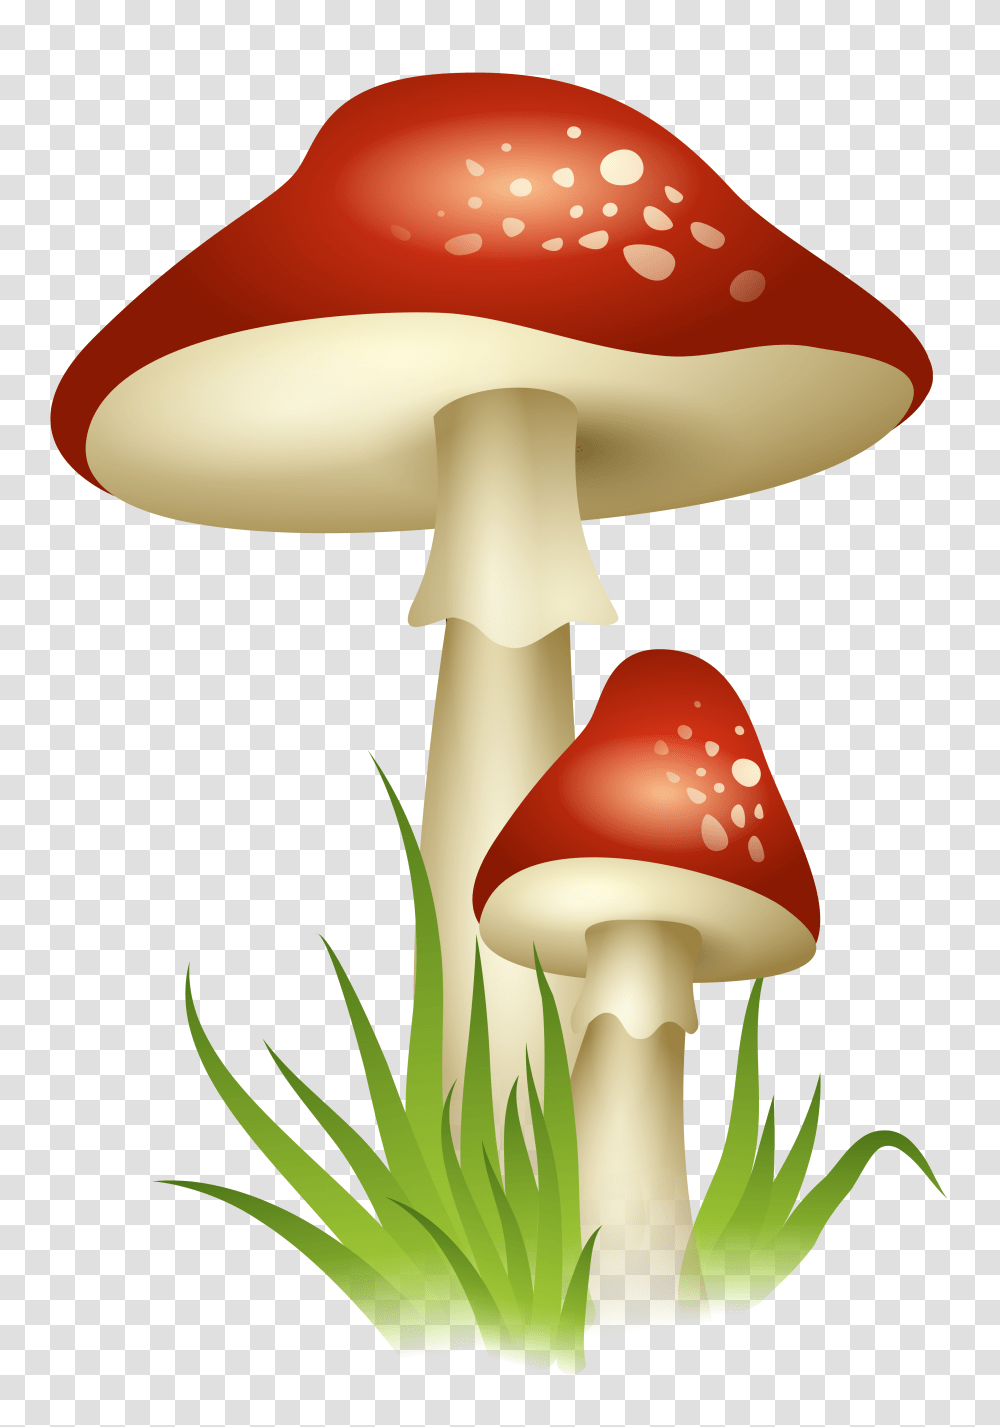 Mushrooms, Lamp, Plant, Agaric, Fungus Transparent Png